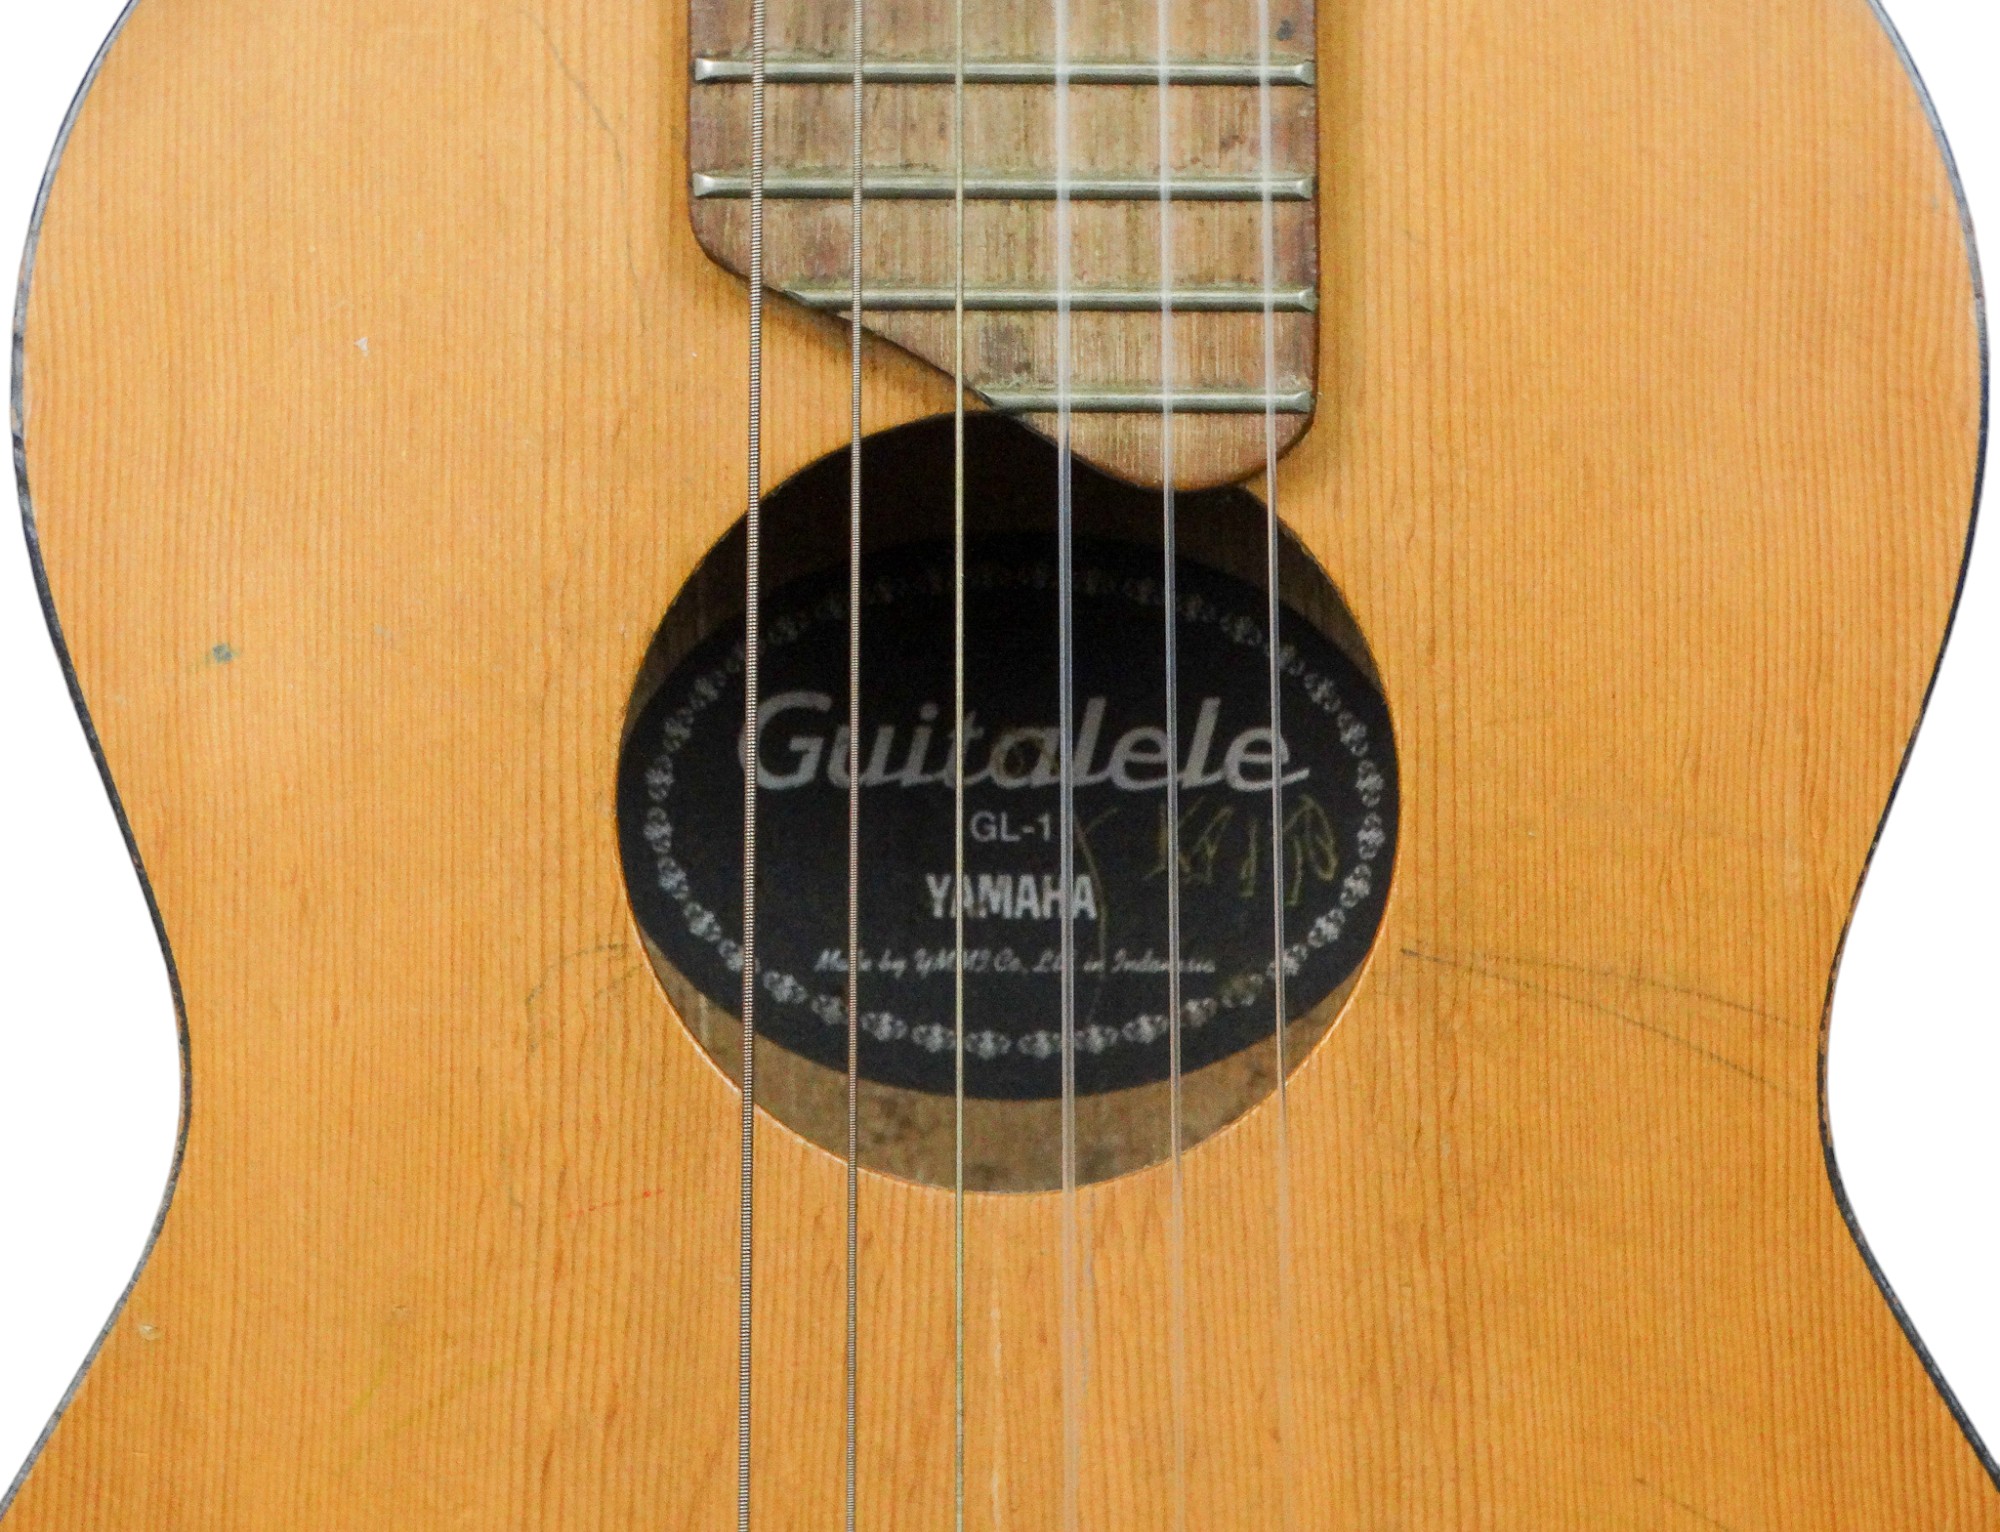 A Yamaha guitalele. - Image 2 of 5